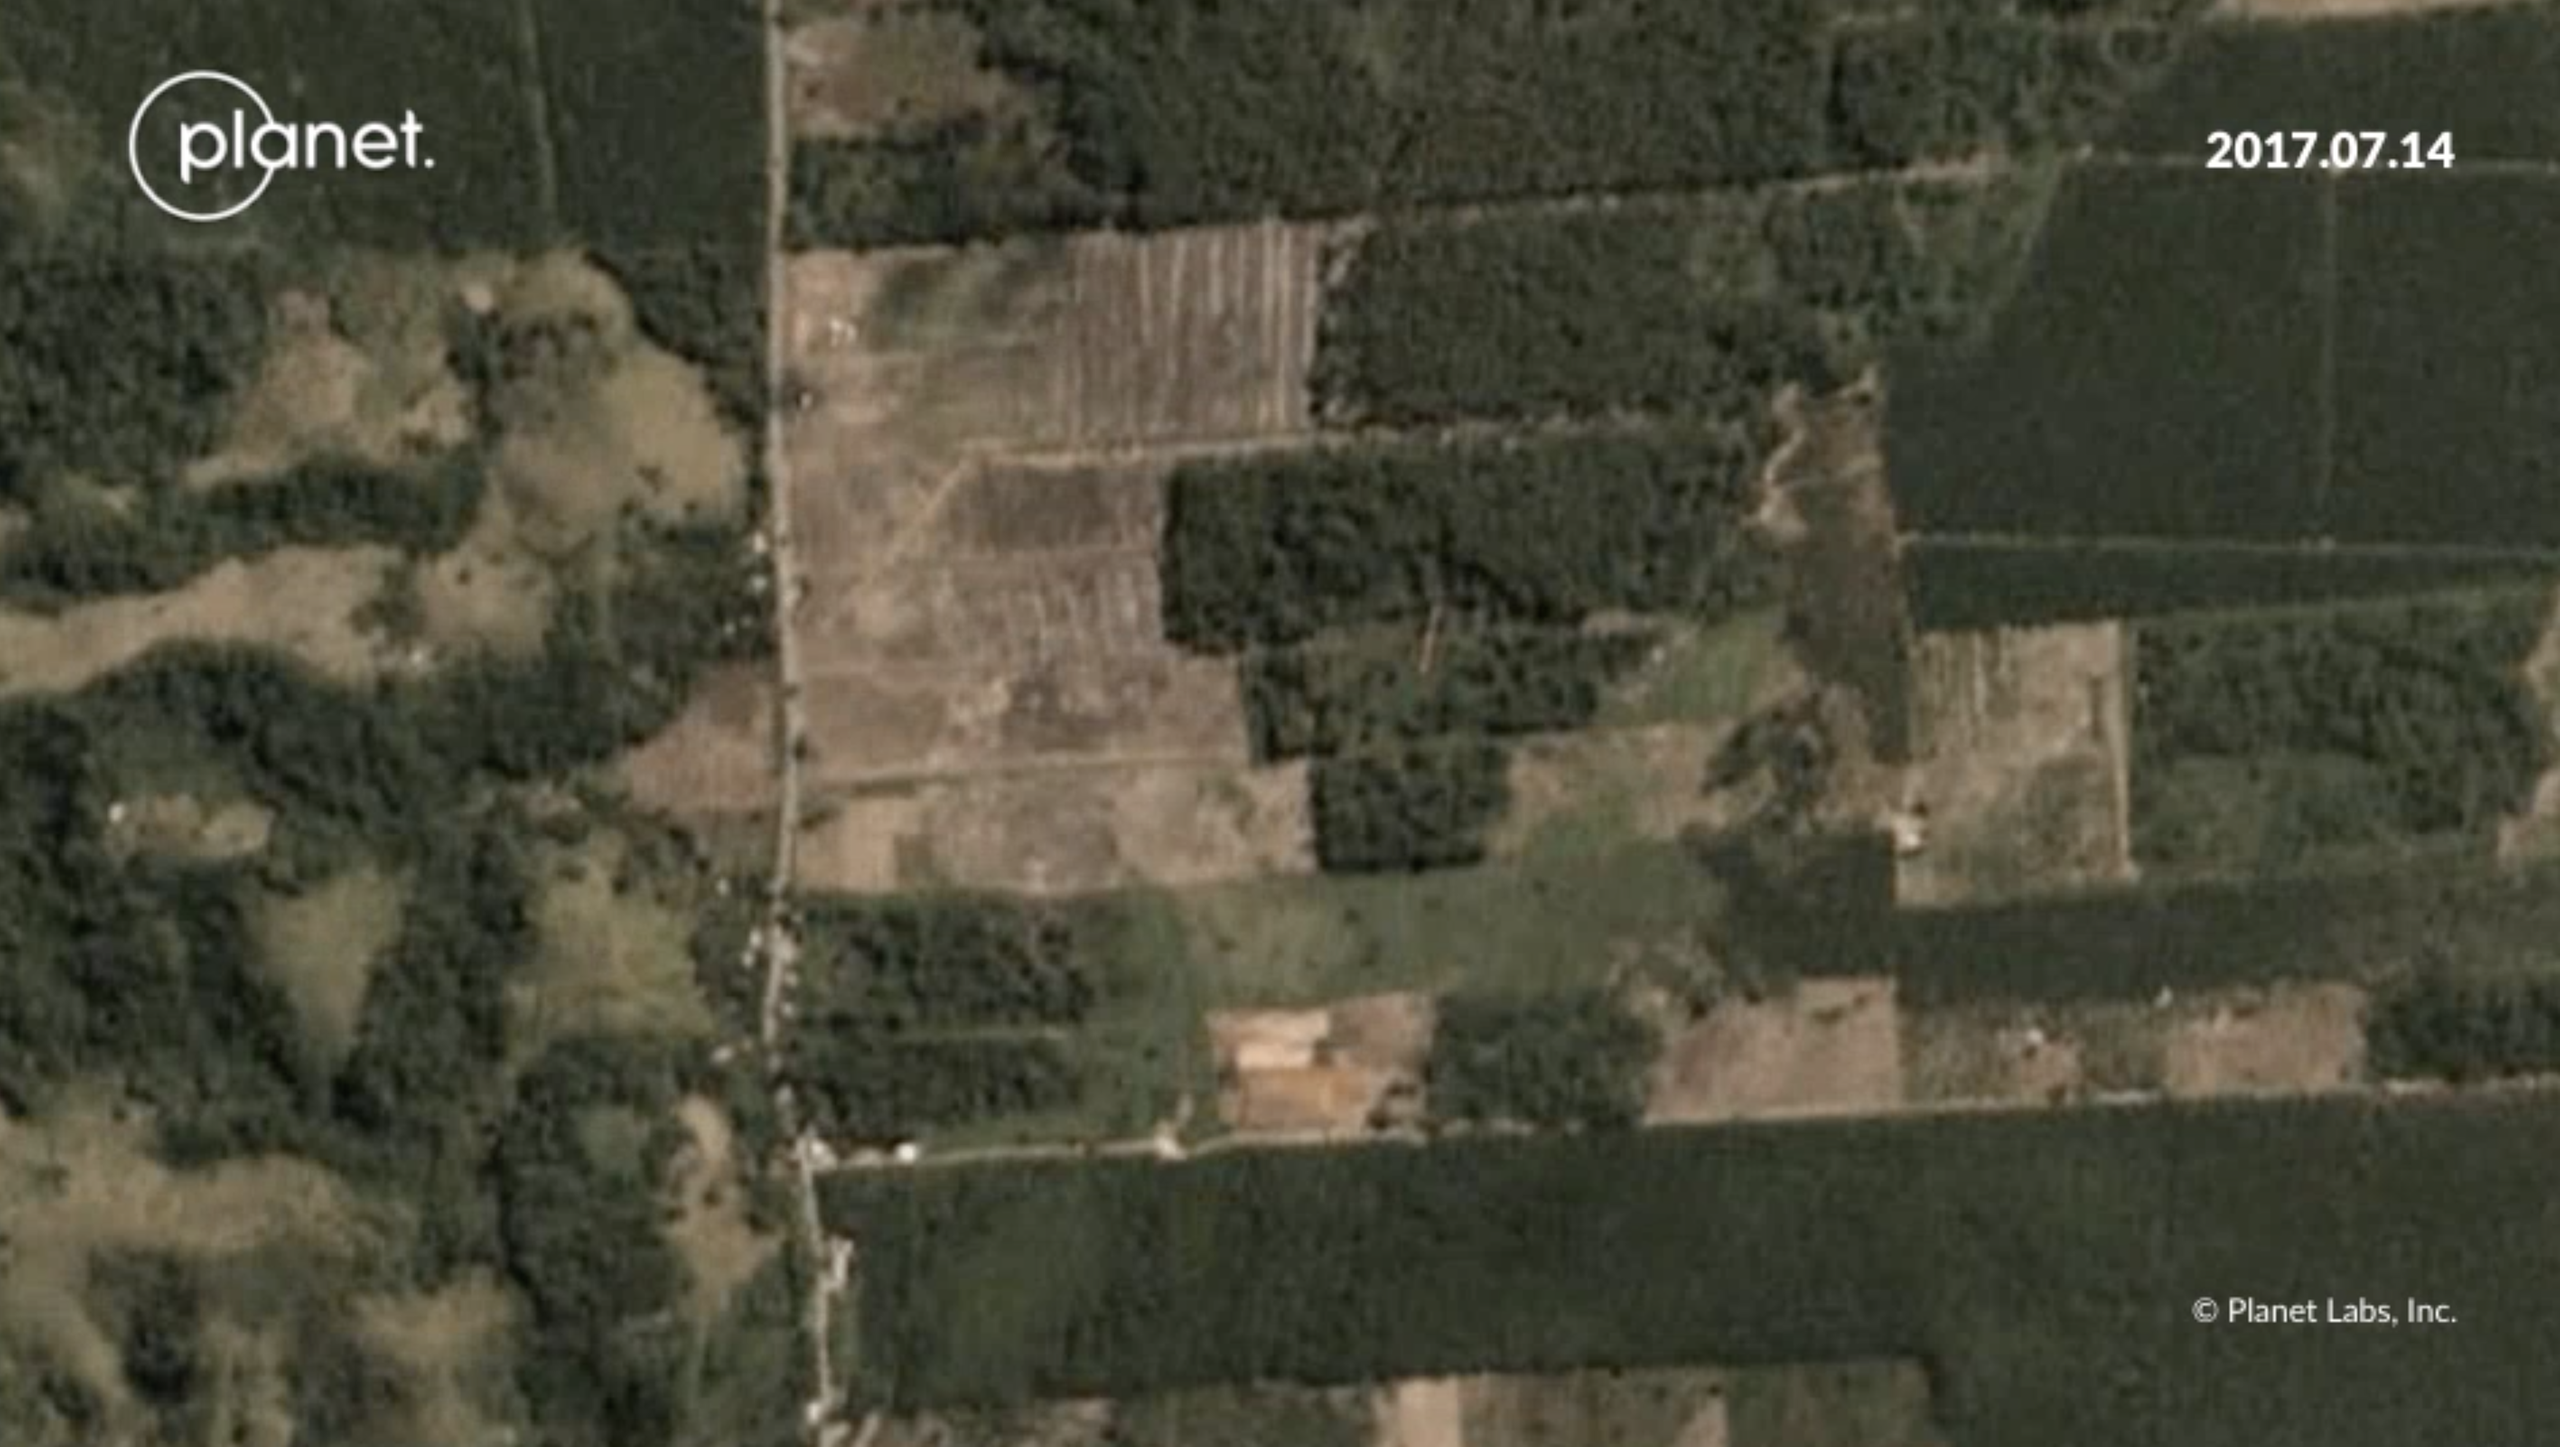 Satellite images showing deforestation